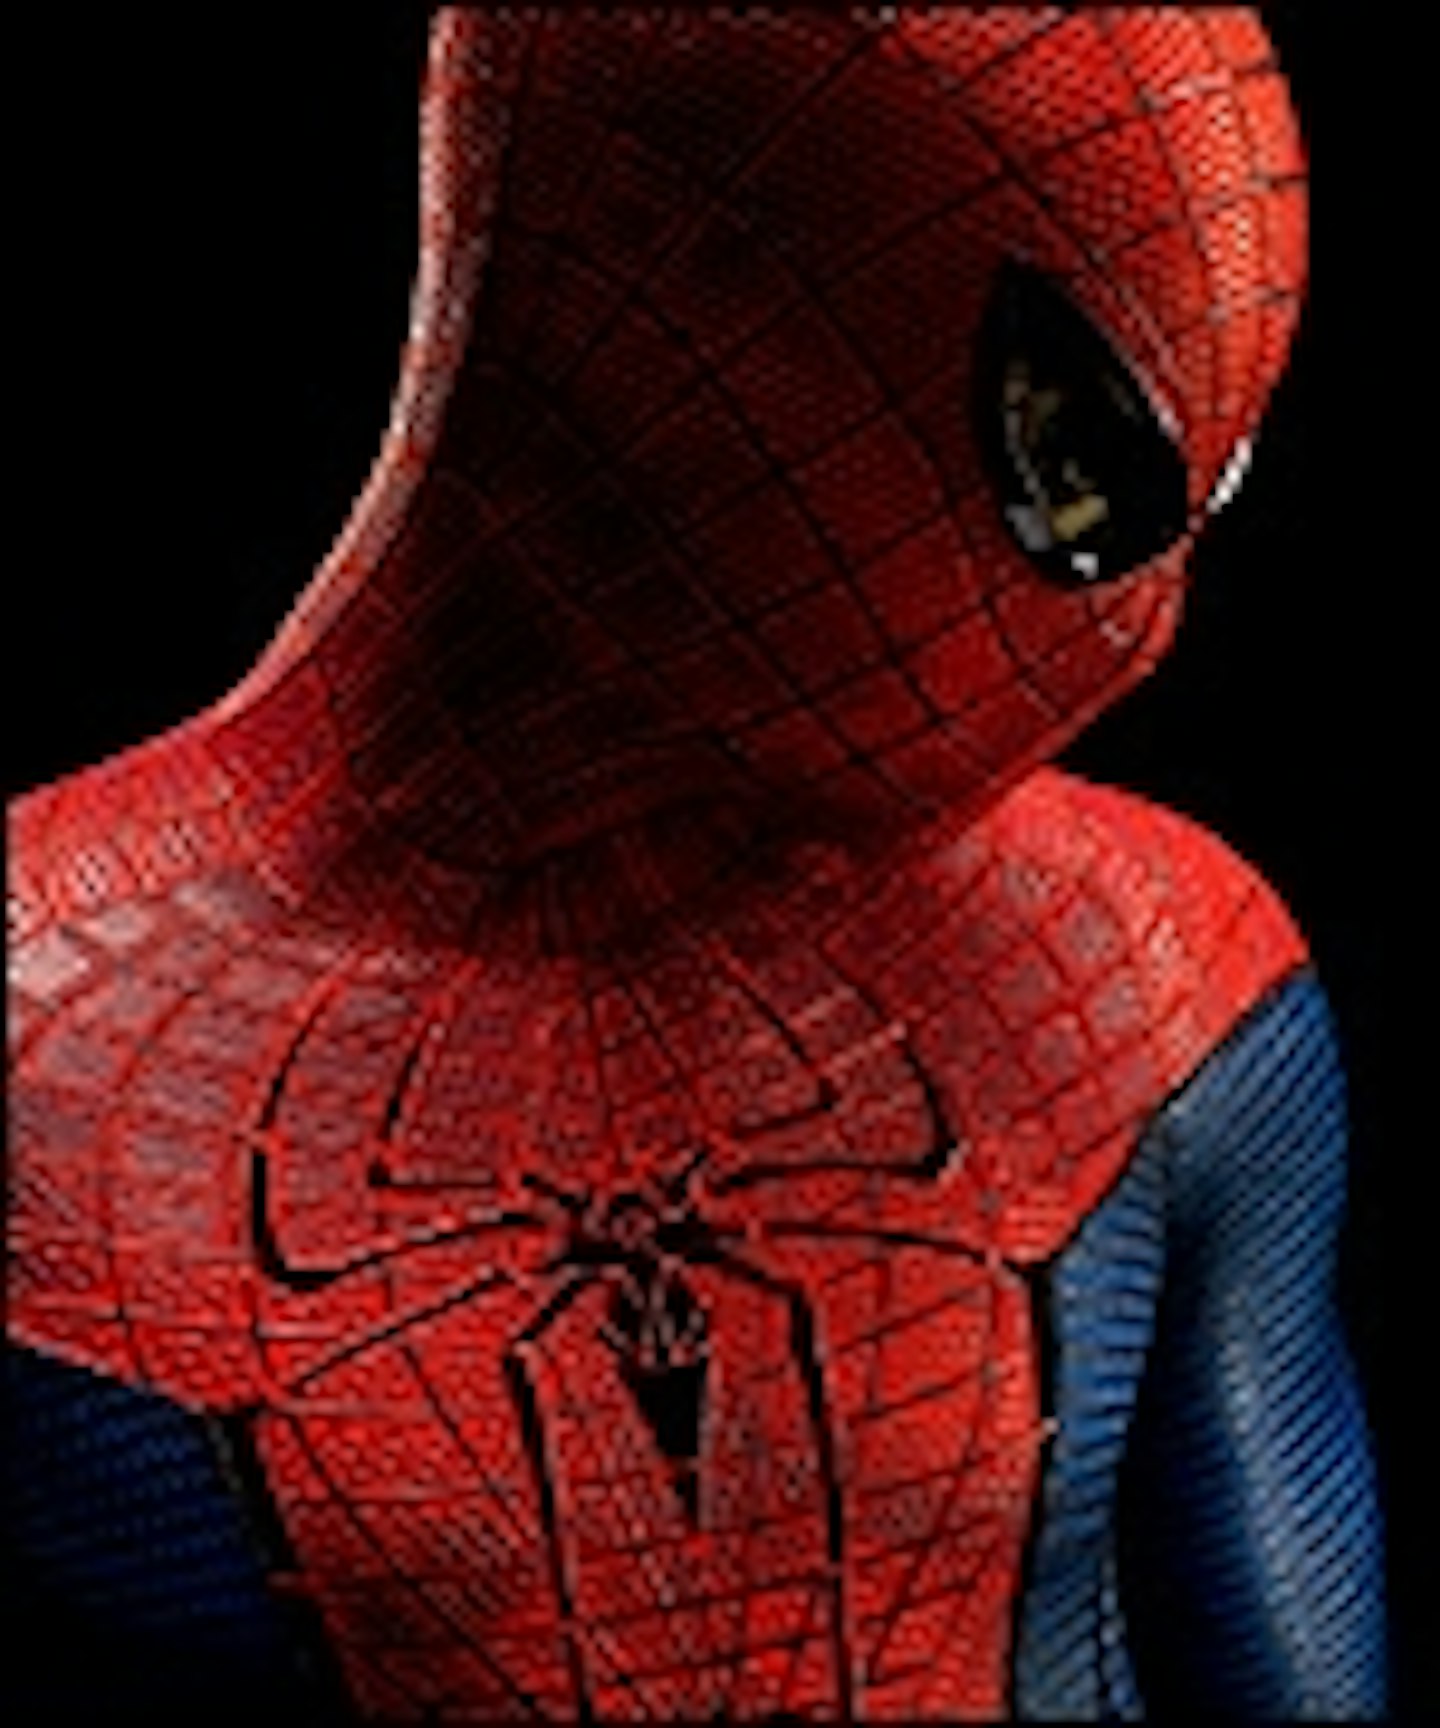 Amazing Spider-Man 2 Release Set